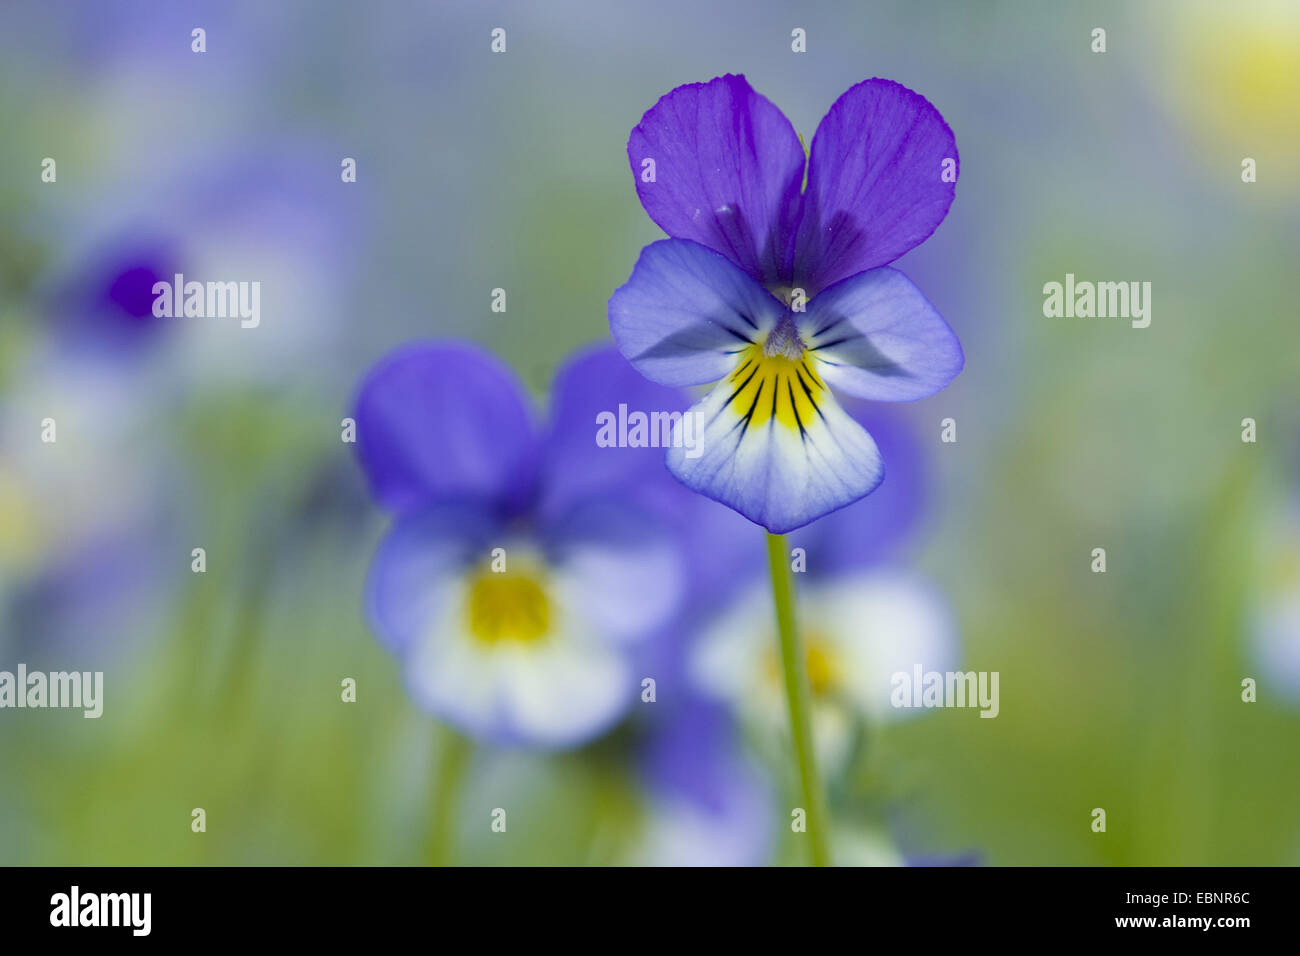 Cuore di semplicità, heartsease, wild pansy, a tre colori (Viola Viola tricolore), fiori, Germania Foto Stock